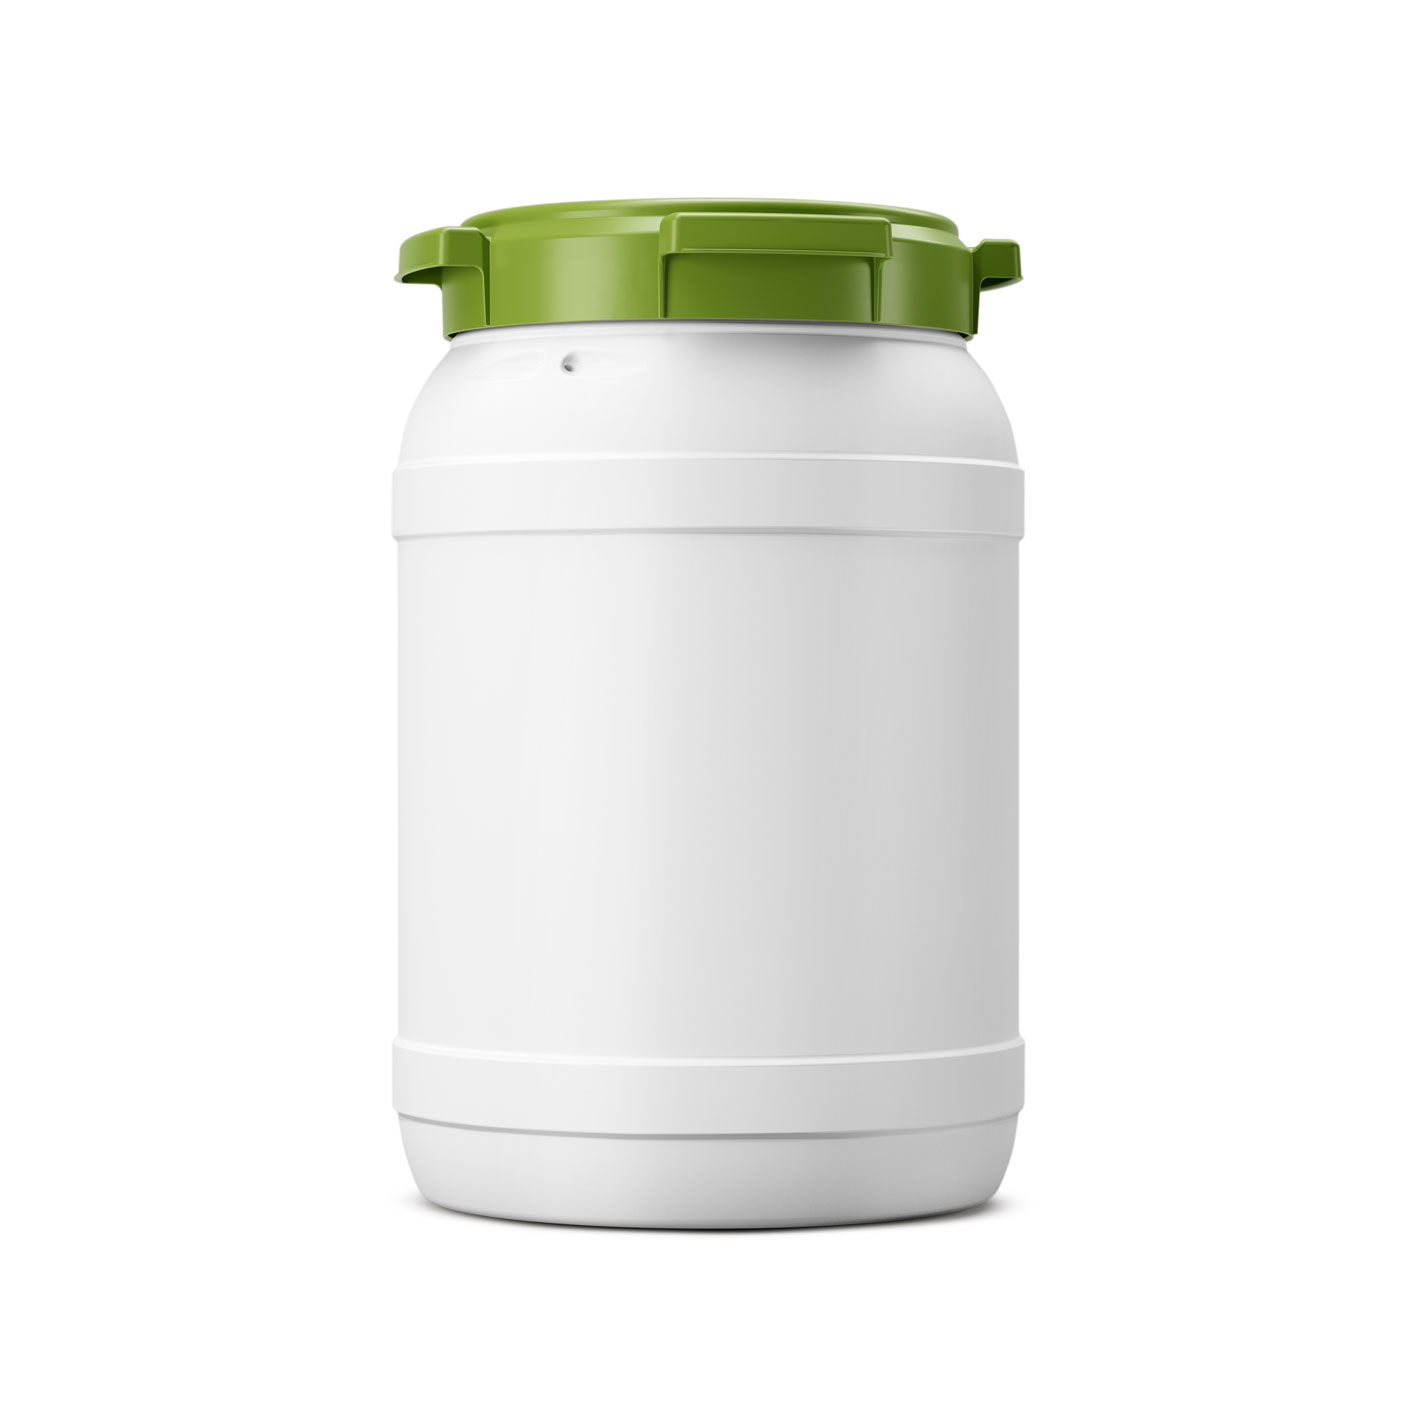 20 liter biobased Wijdmonds vat